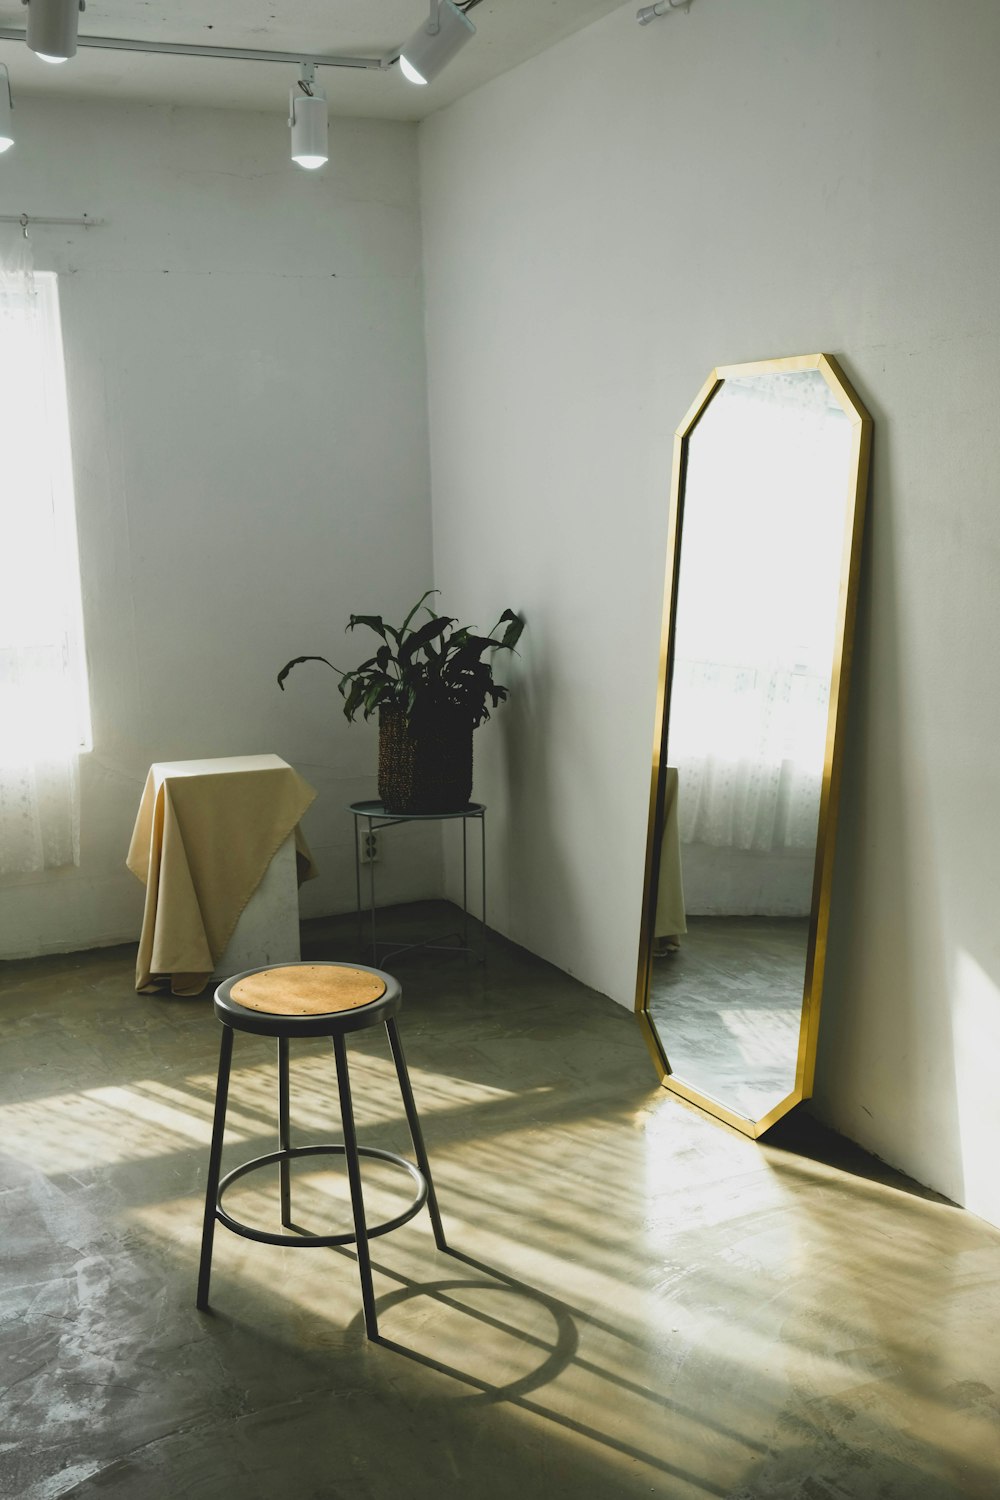 taburete redondo de madera marrón cerca del espejo inclinado